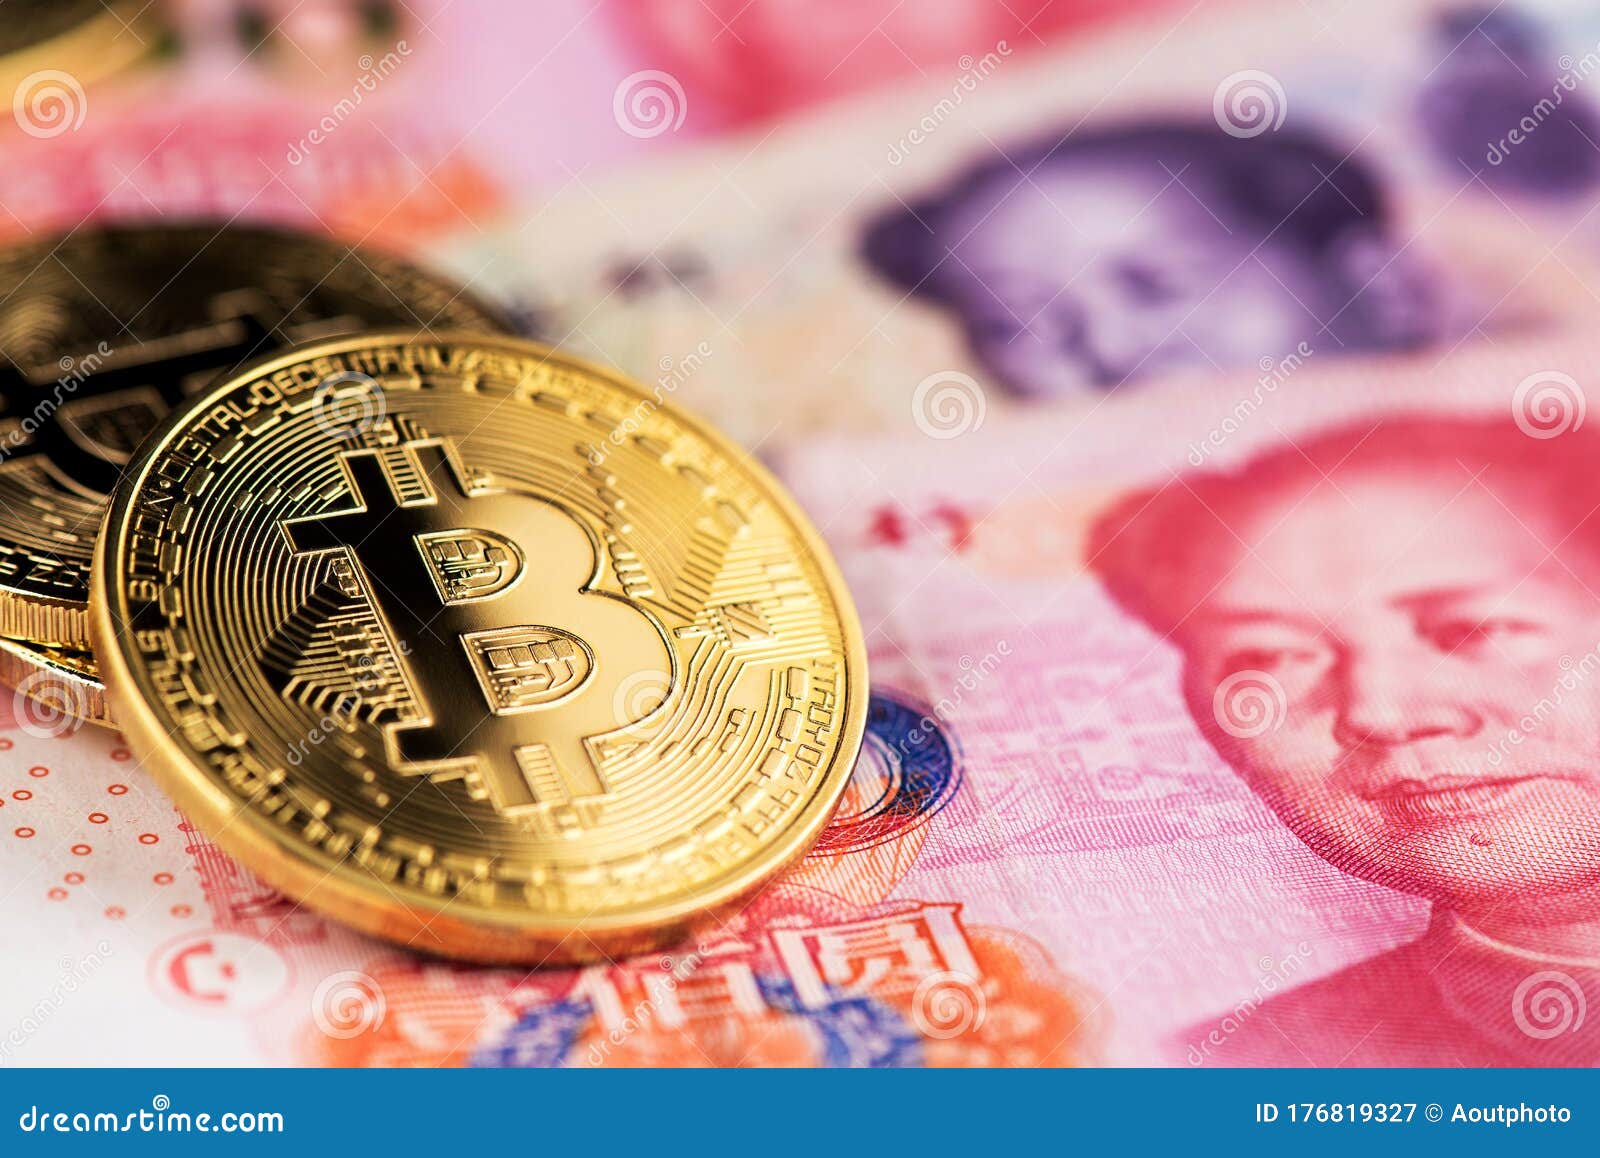 yuan bitcoin)